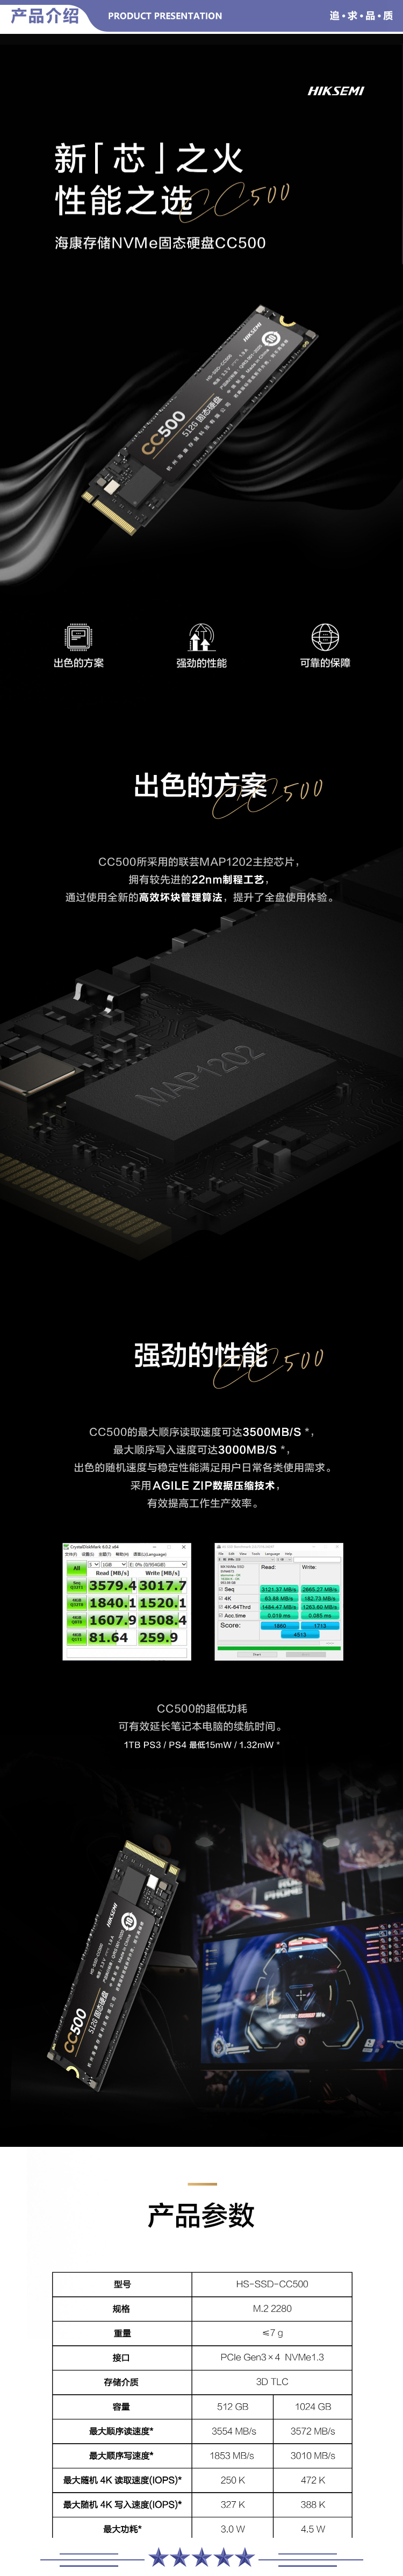 海康威视 CC500 SSD固态硬盘 512G M.2接口NVMe协议笔记本电脑台式机 2.jpg